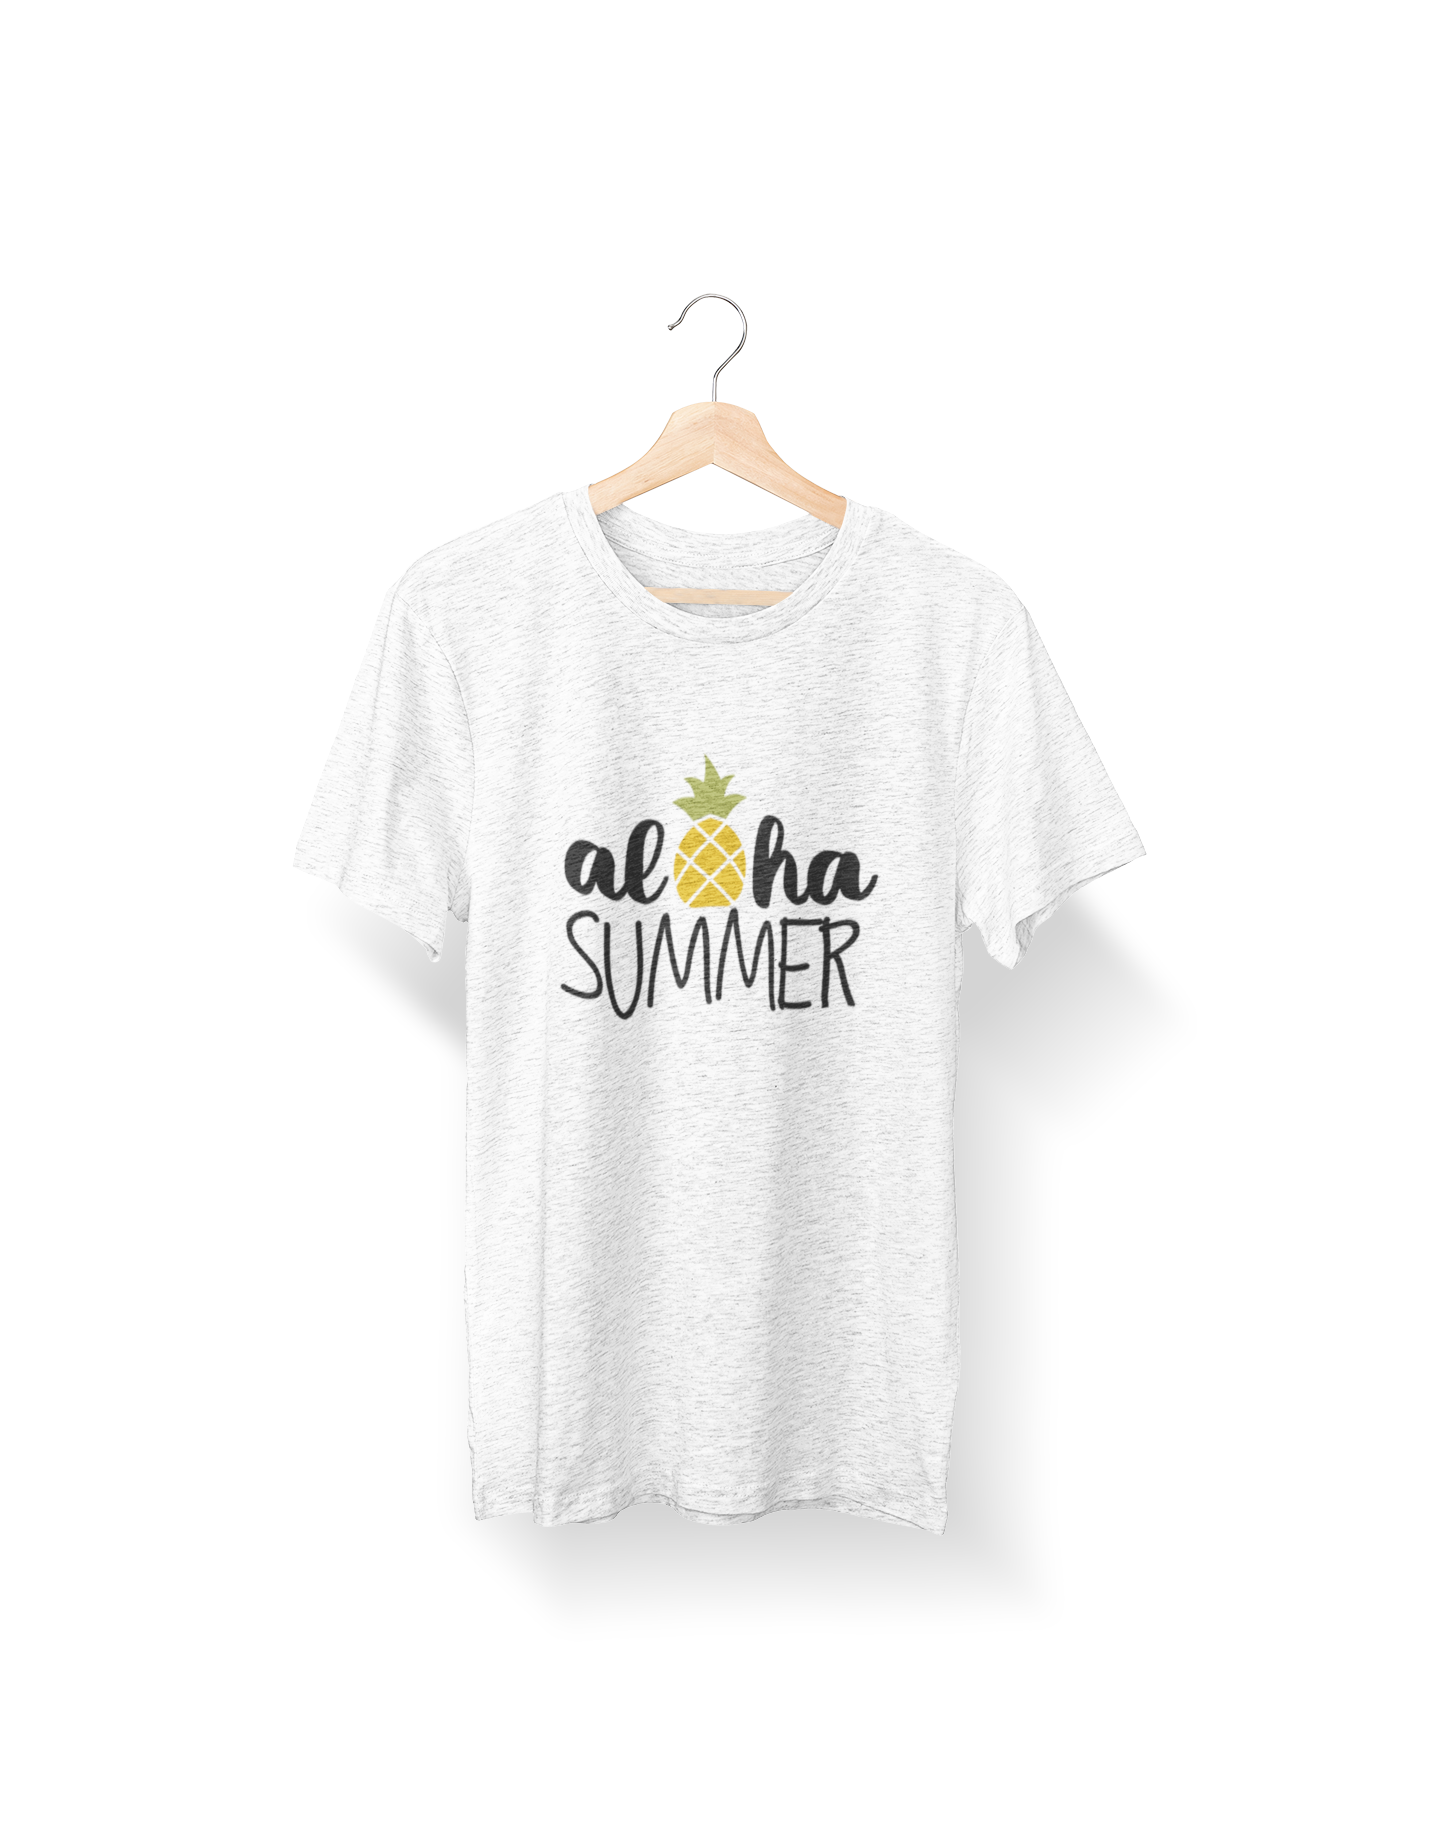 Aloha Summer Crew Neck T-Shirt